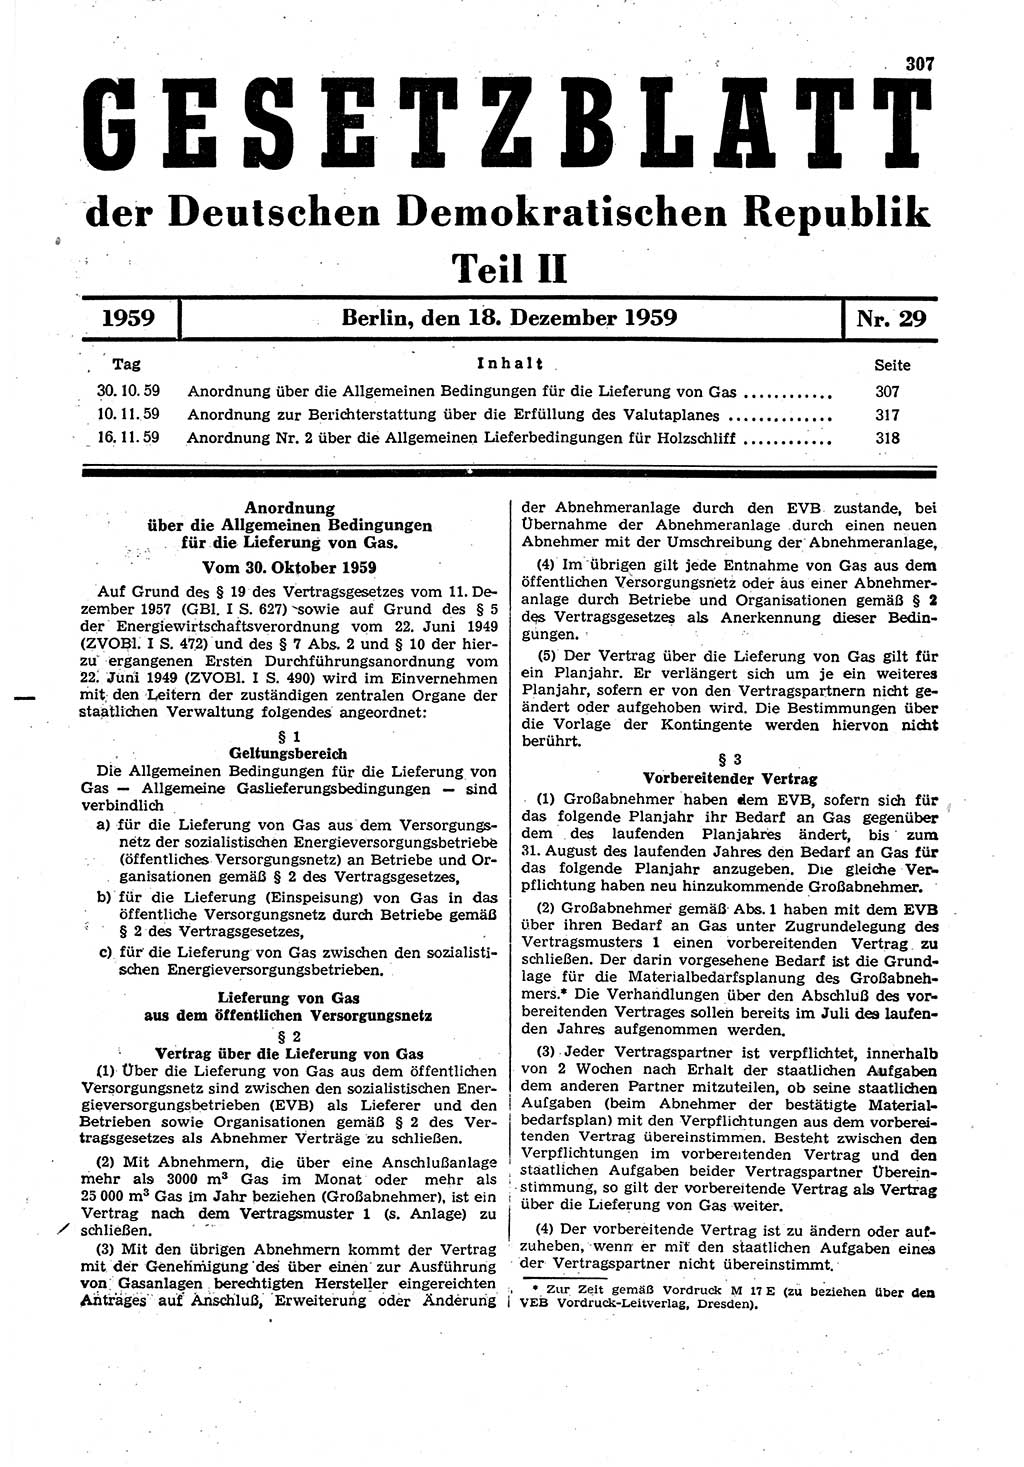 Gesetzblatt (GBl.) der Deutschen Demokratischen Republik (DDR) Teil ⅠⅠ 1959, Seite 307 (GBl. DDR ⅠⅠ 1959, S. 307)